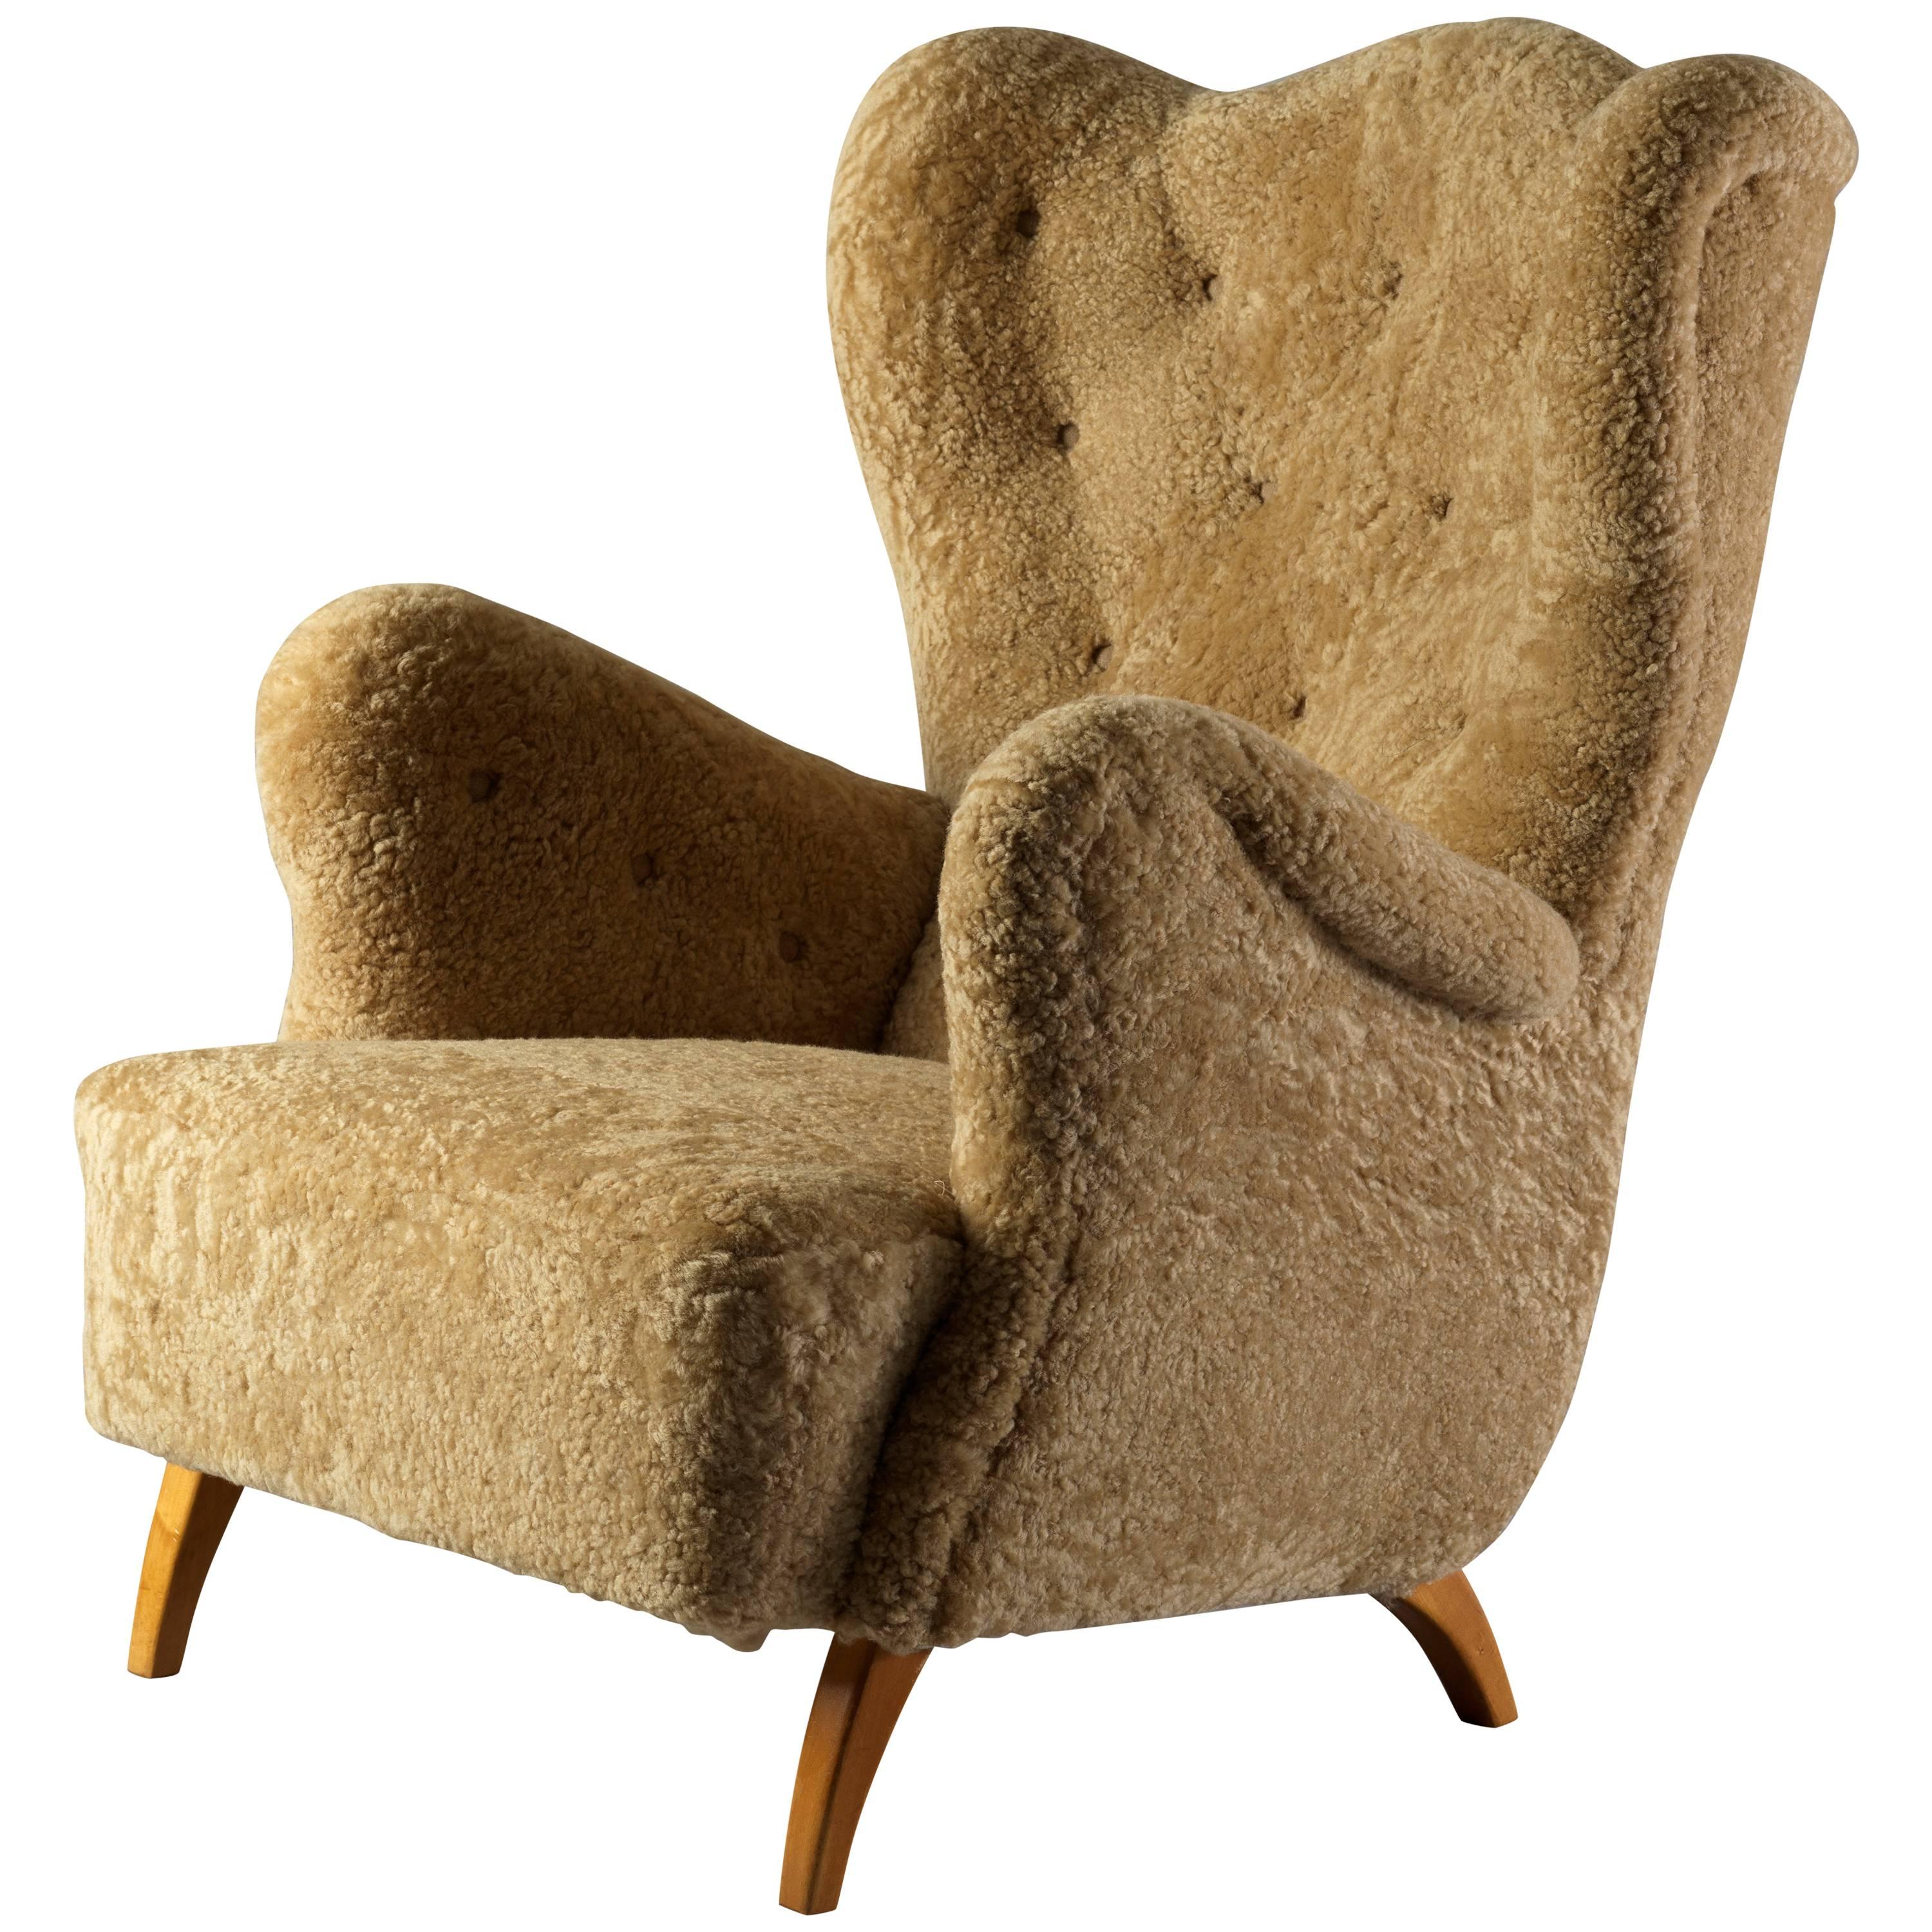 Scandinavian Organic Modernist Lounge Chair, Beige Lambskin, Oak Legs, 1940s